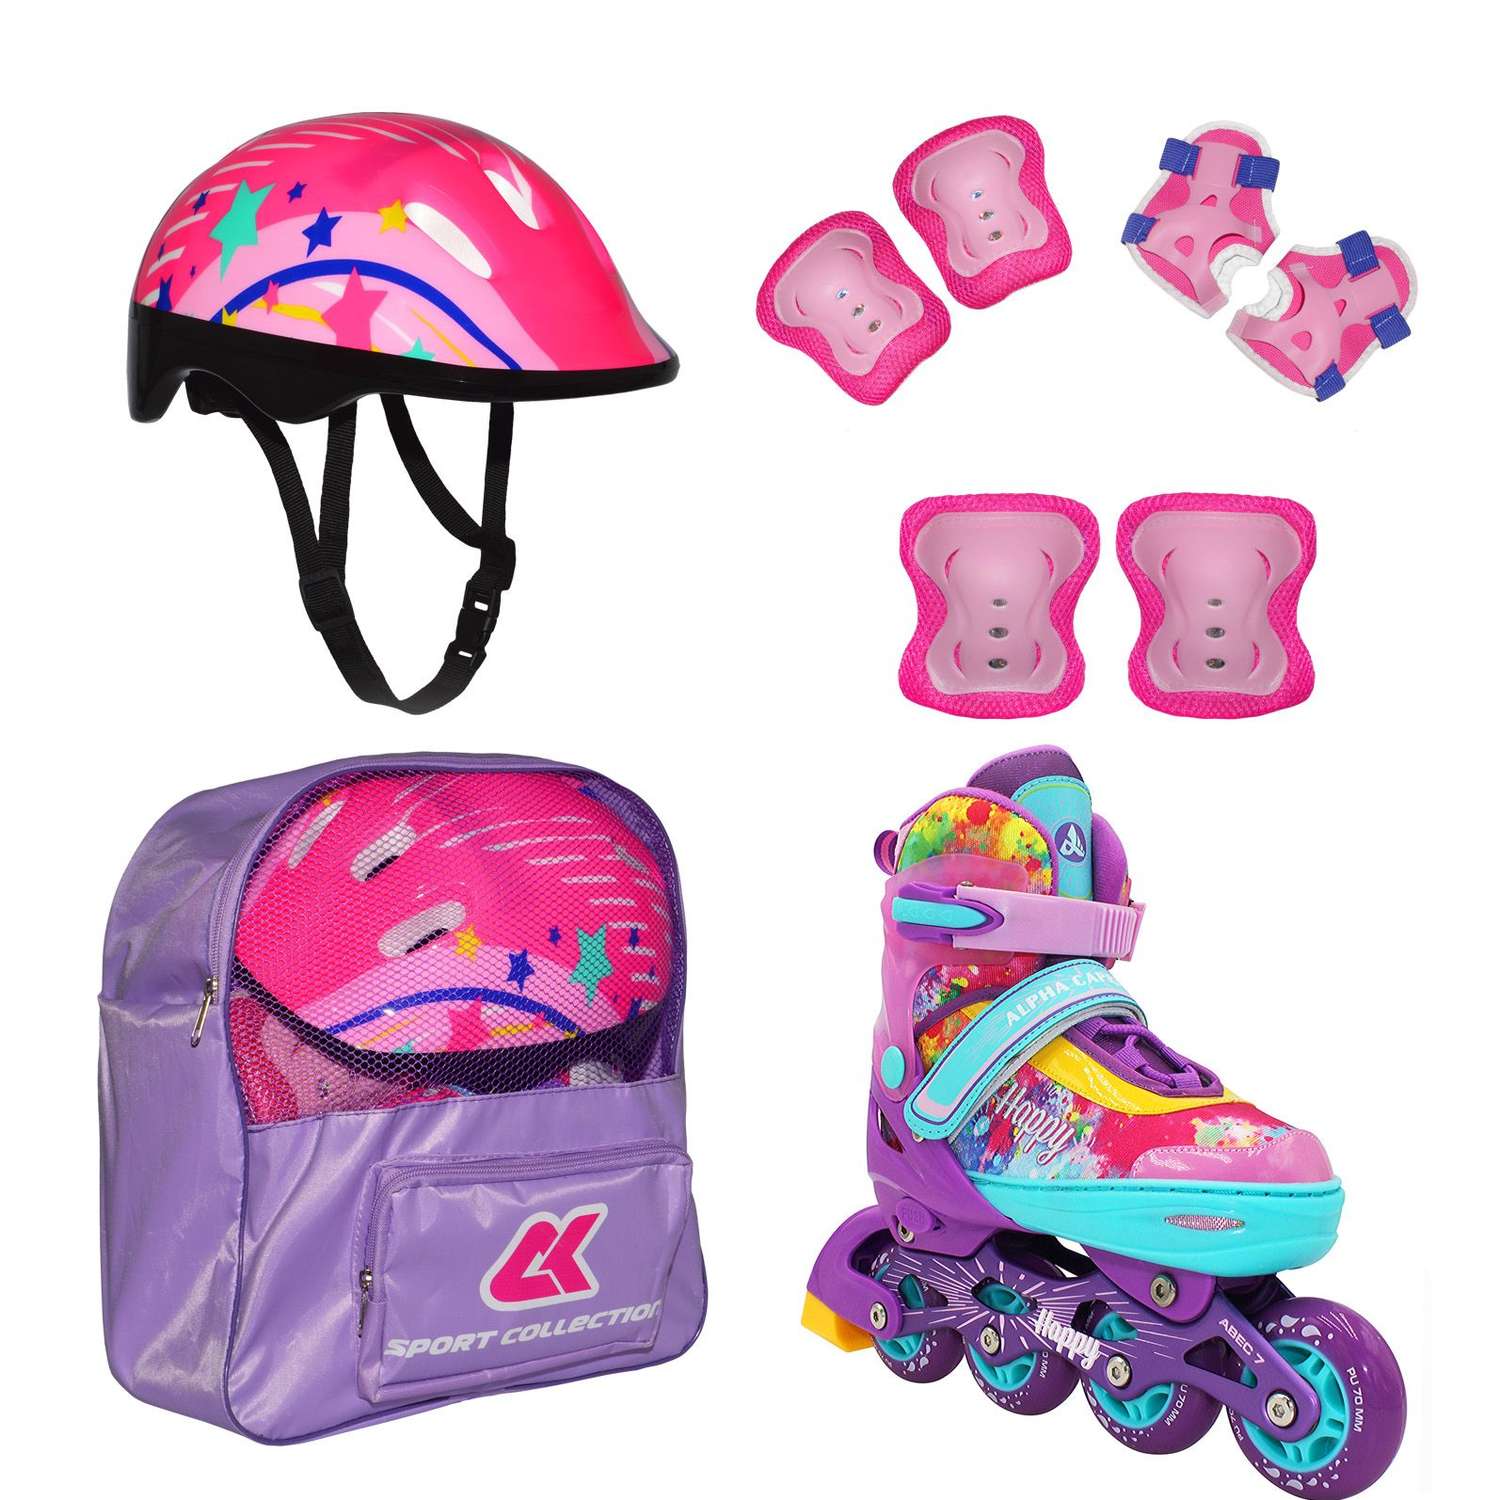 Набор роликовые коньки Sport Collection раздвижные Set Happy Violet шлем и набор защиты в сумке размер XS 25-28 - фото 1